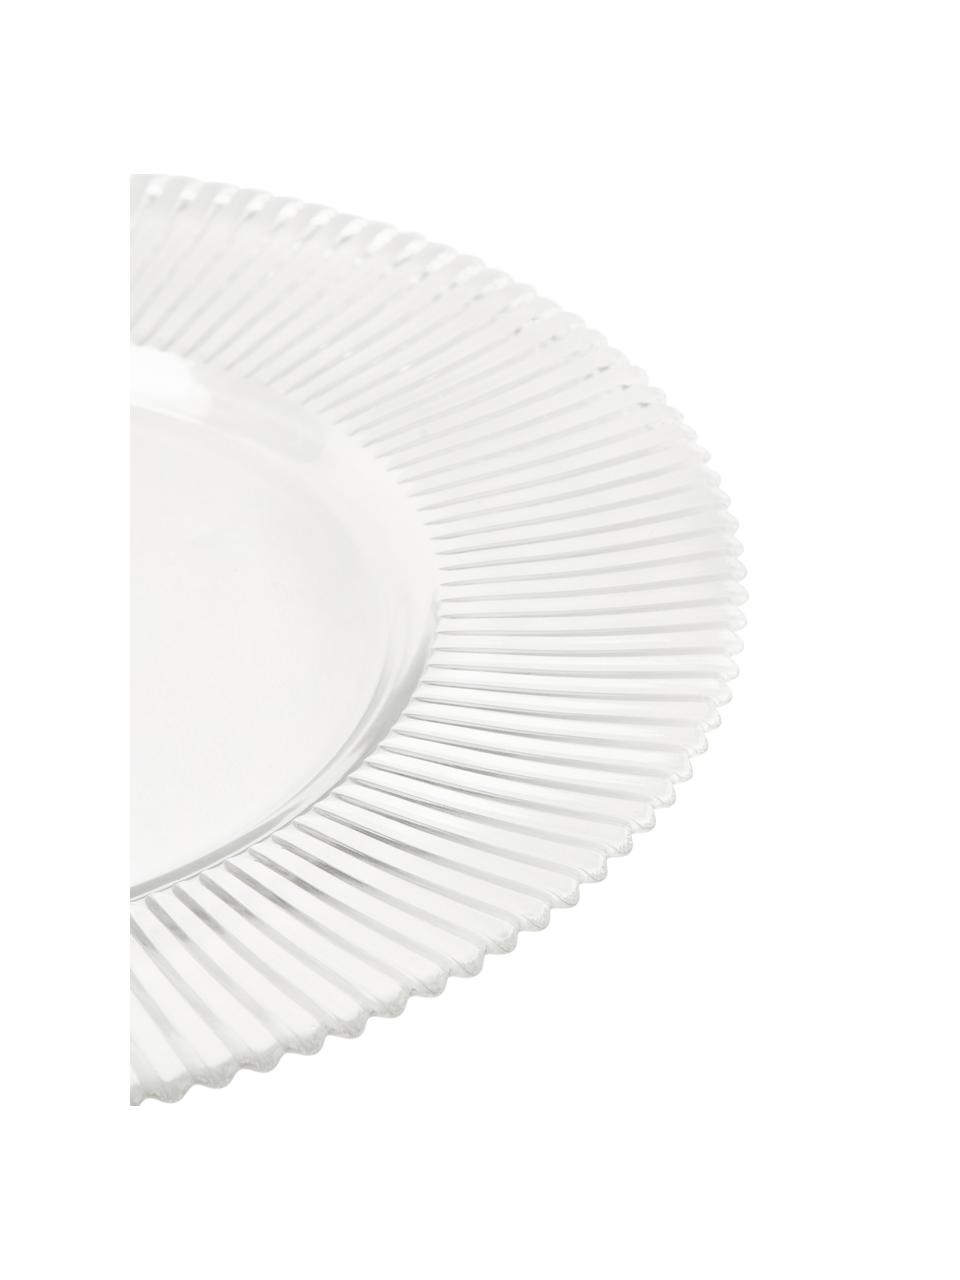 Piatto da colazione con rilievo scanalato Effie 4 pz, Vetro, Trasparente, Ø 21 cm